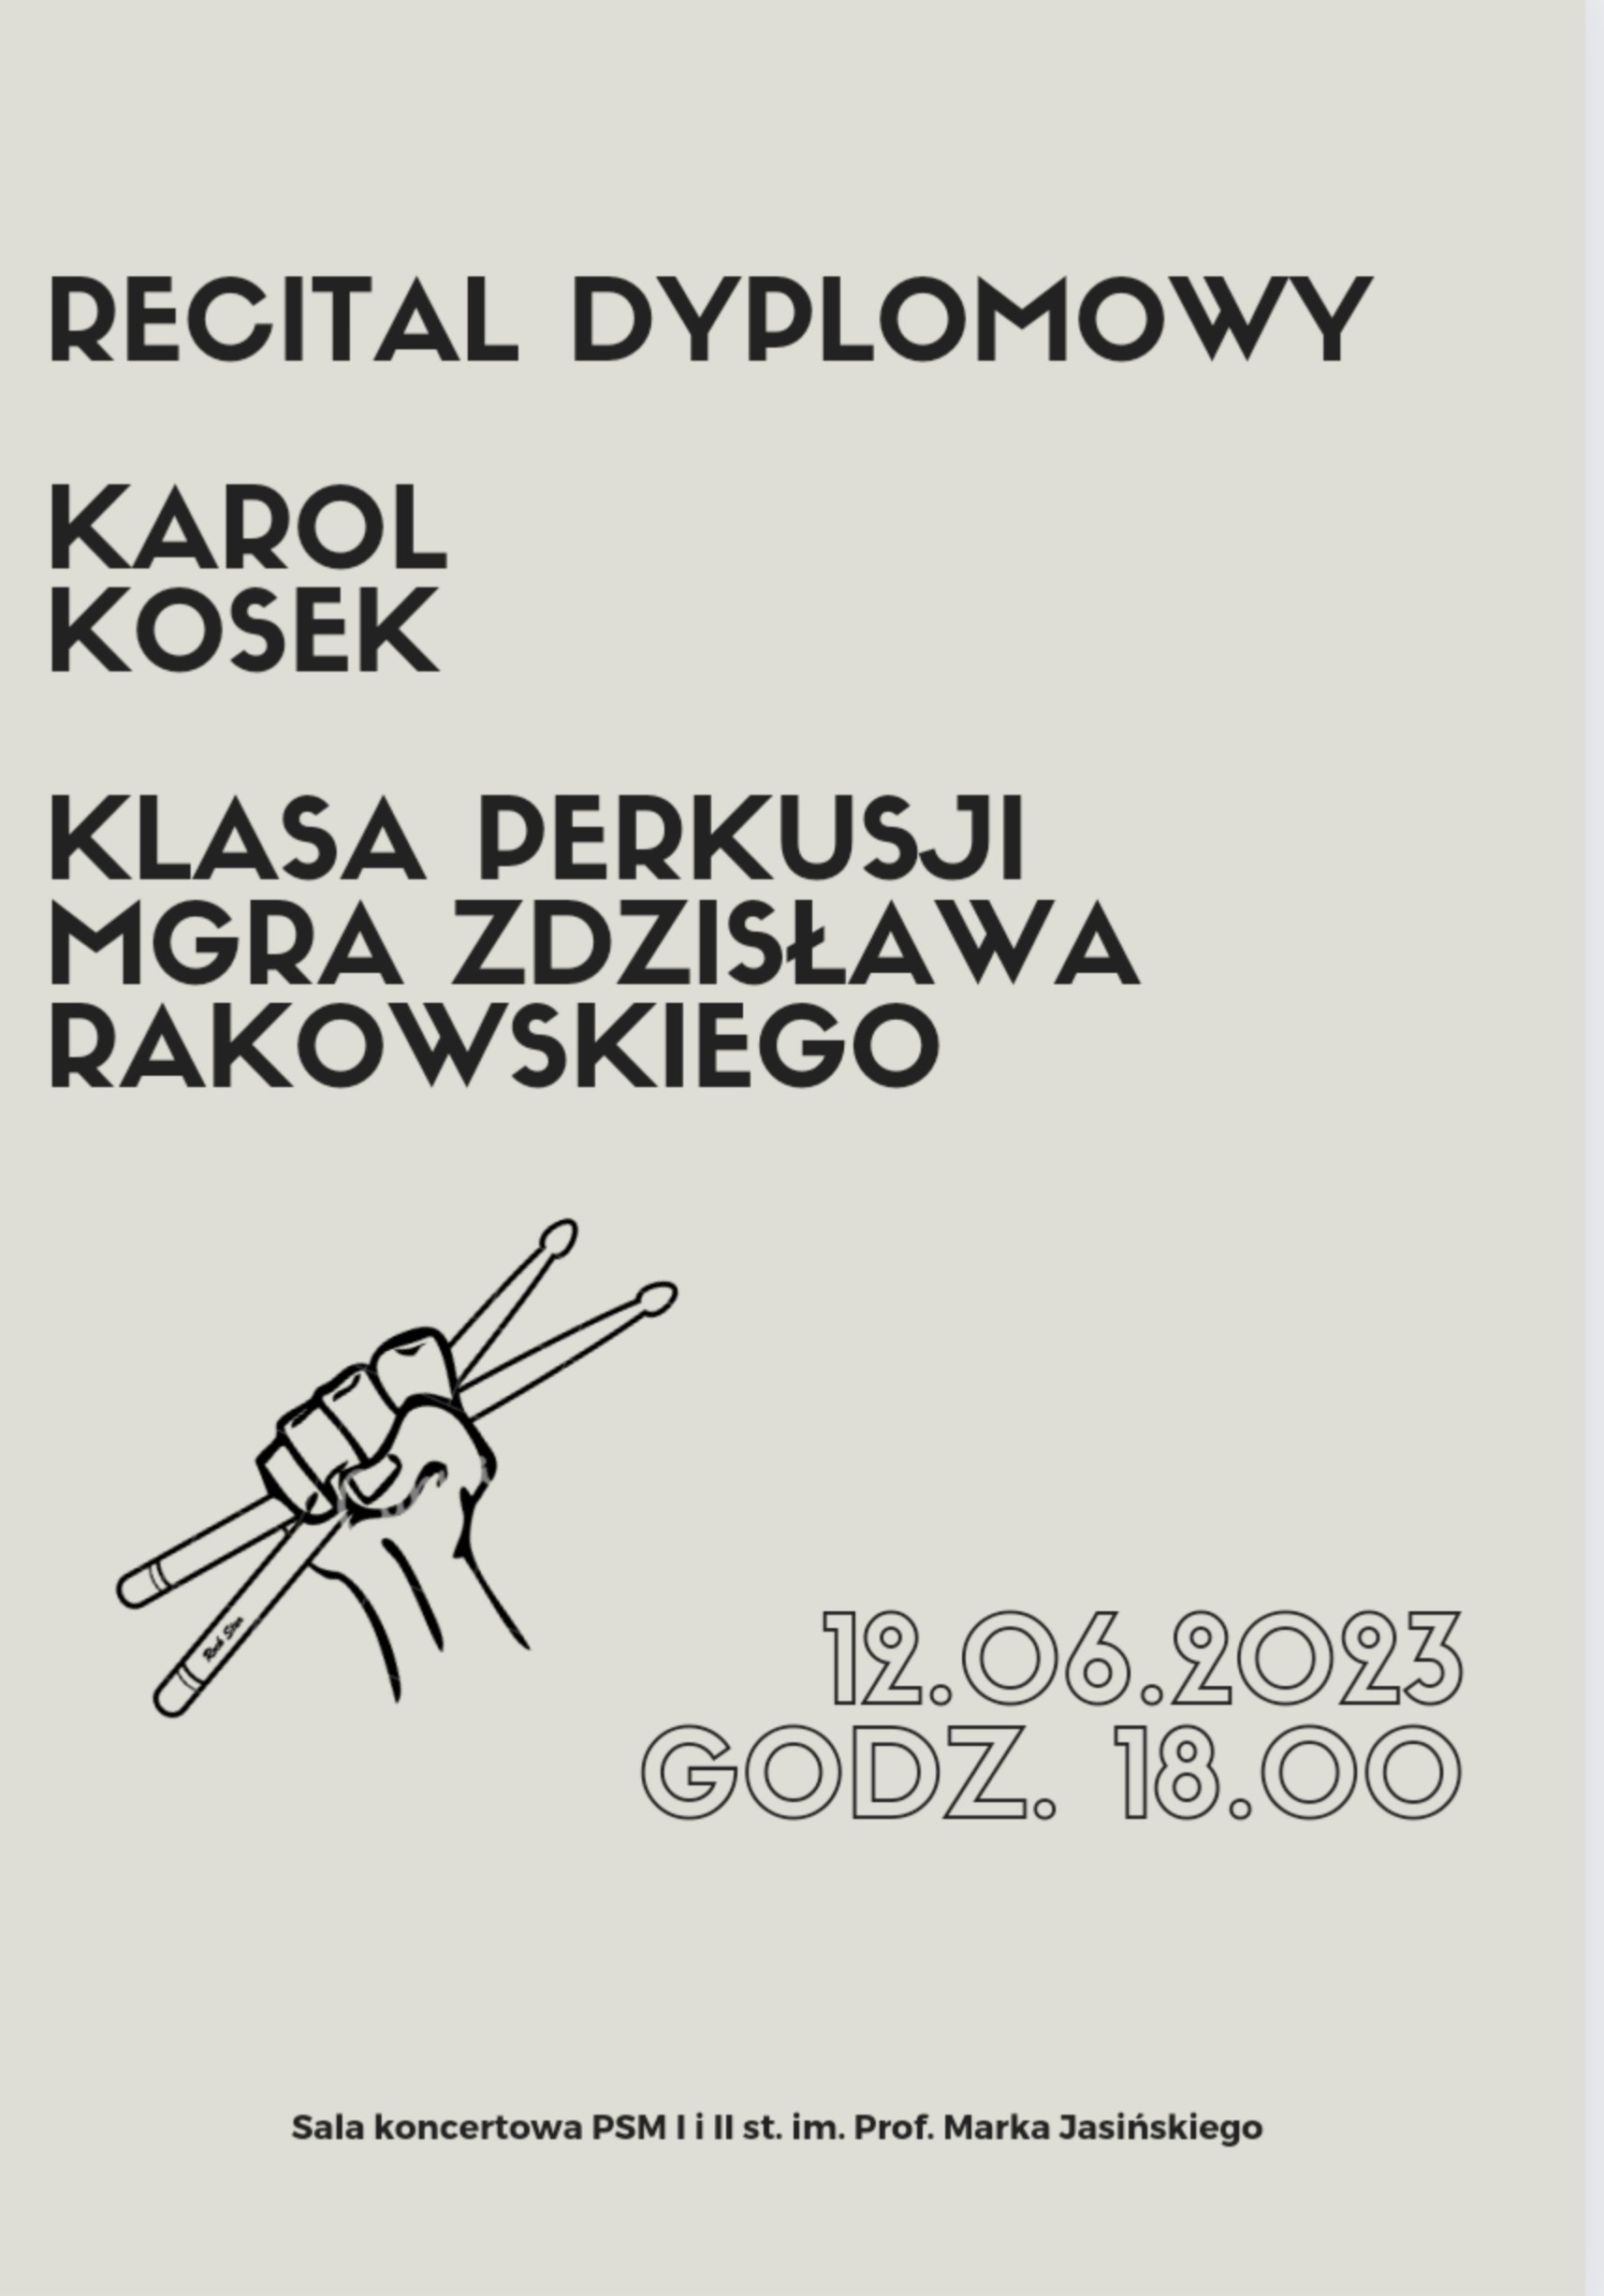 Plakat informujący o recitalu dyplomowym Karola Koska w dniu 12 czerwca 2023 o godzinie 18.00.